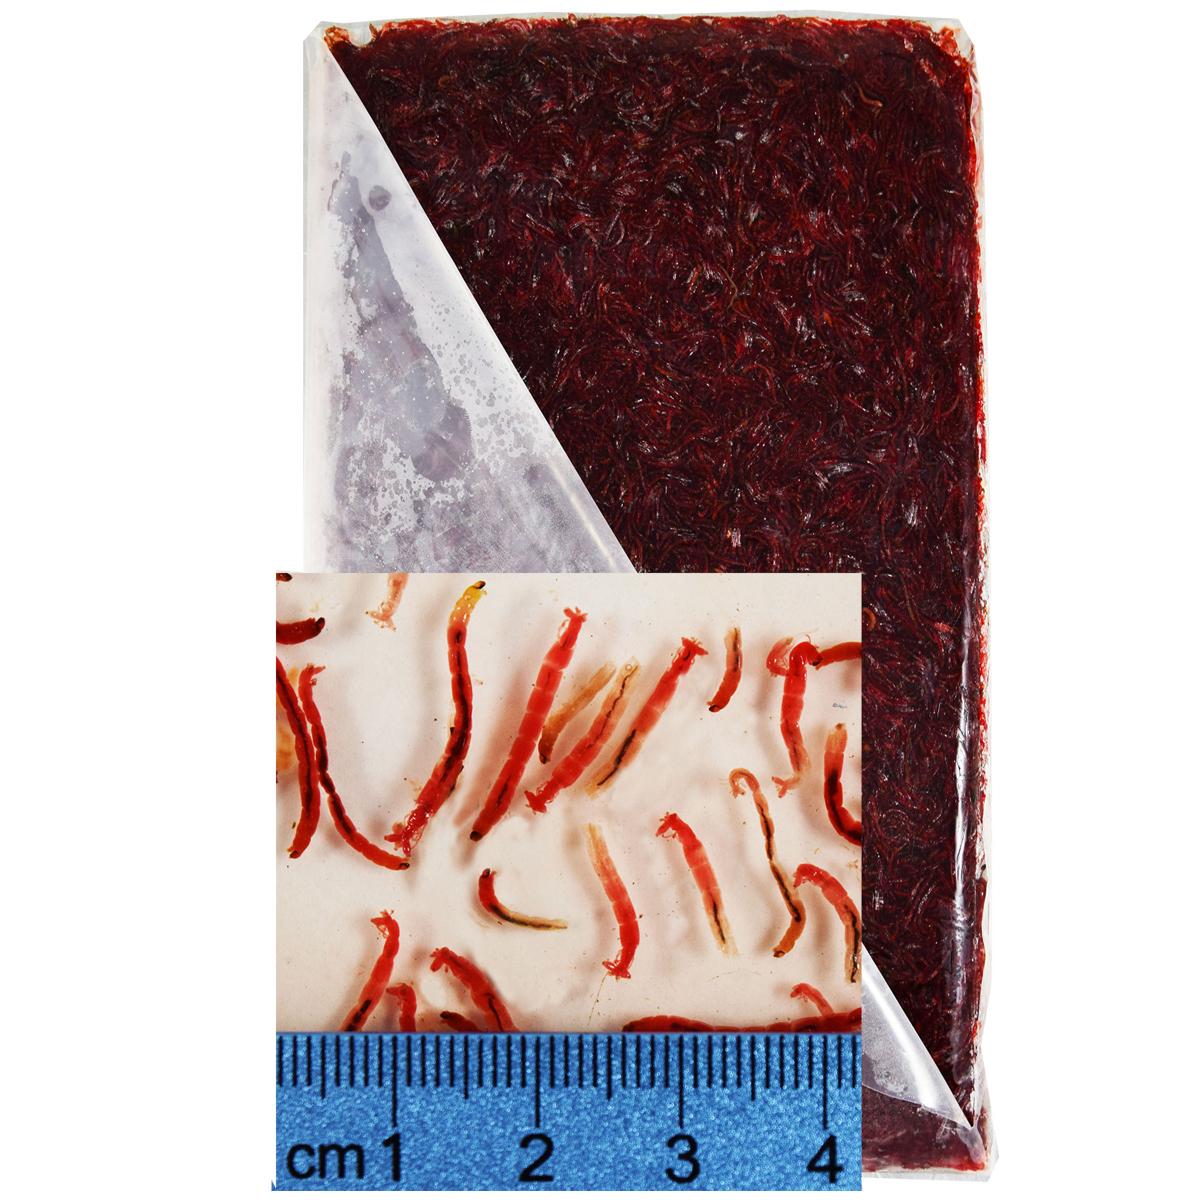 Frozen Bloodworm flat packs, 20 x 500 gm. (10 kg./22 lbs. net weight)